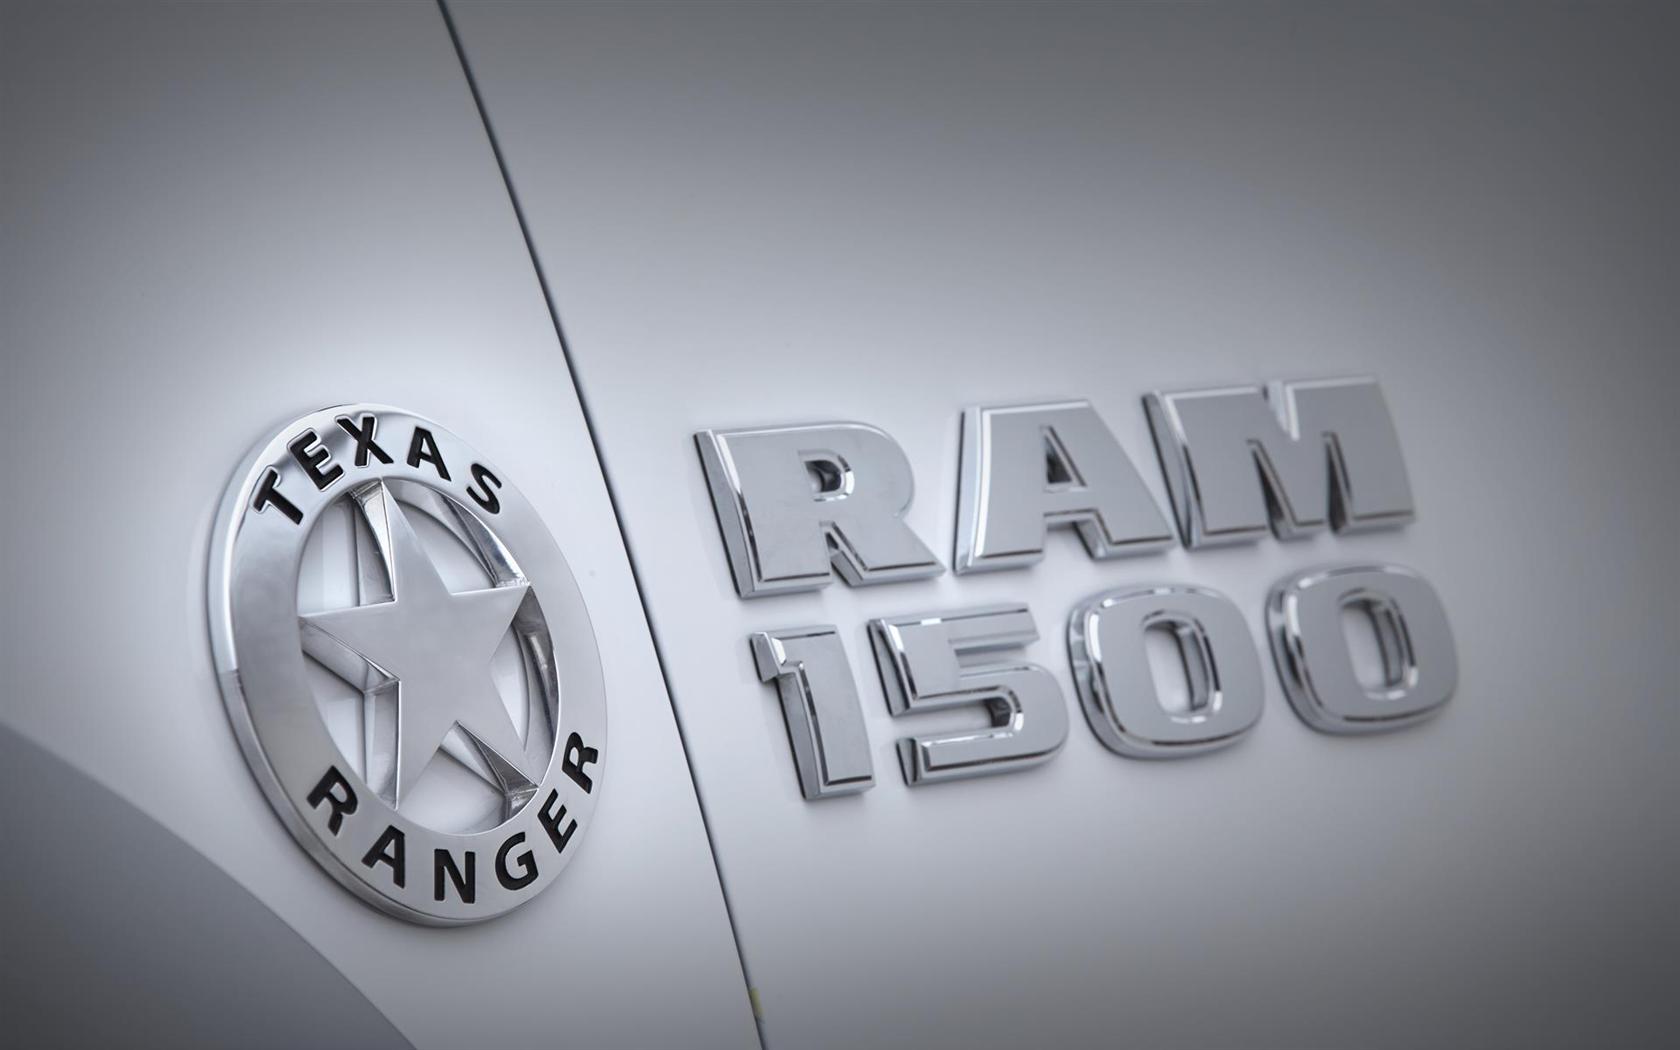 2015 Ram 1500